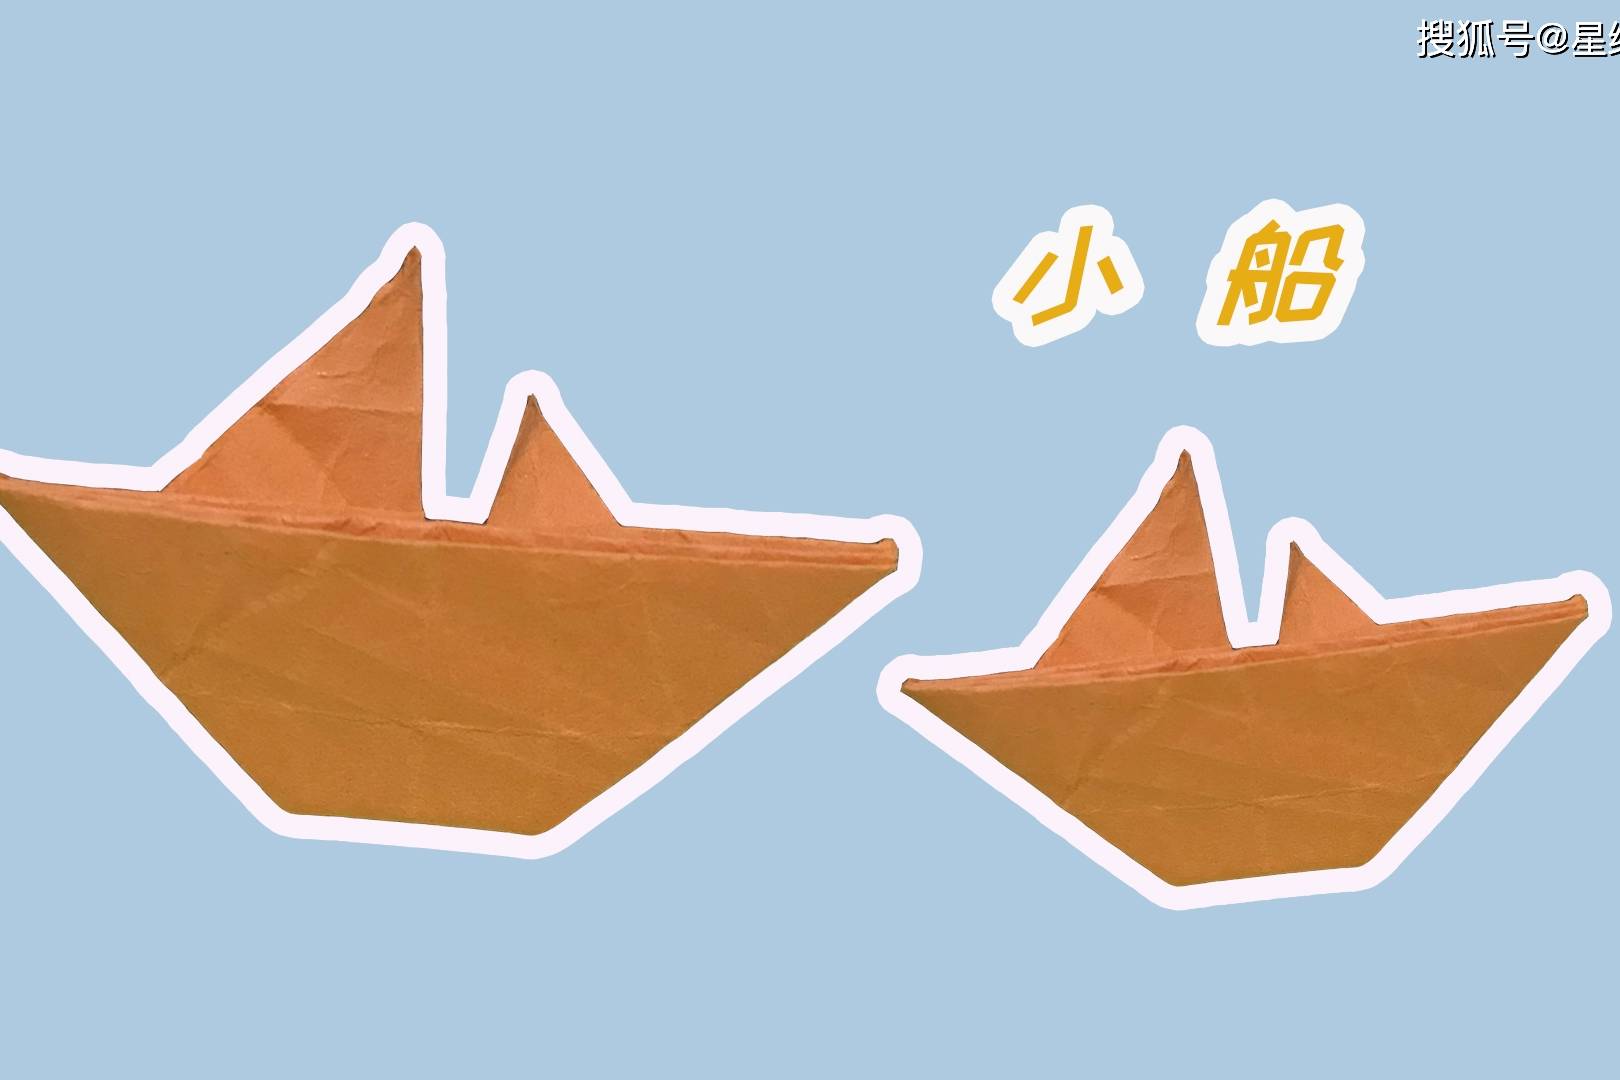 星缘折纸屋橙色的小船在水上是不是最漂亮了呀